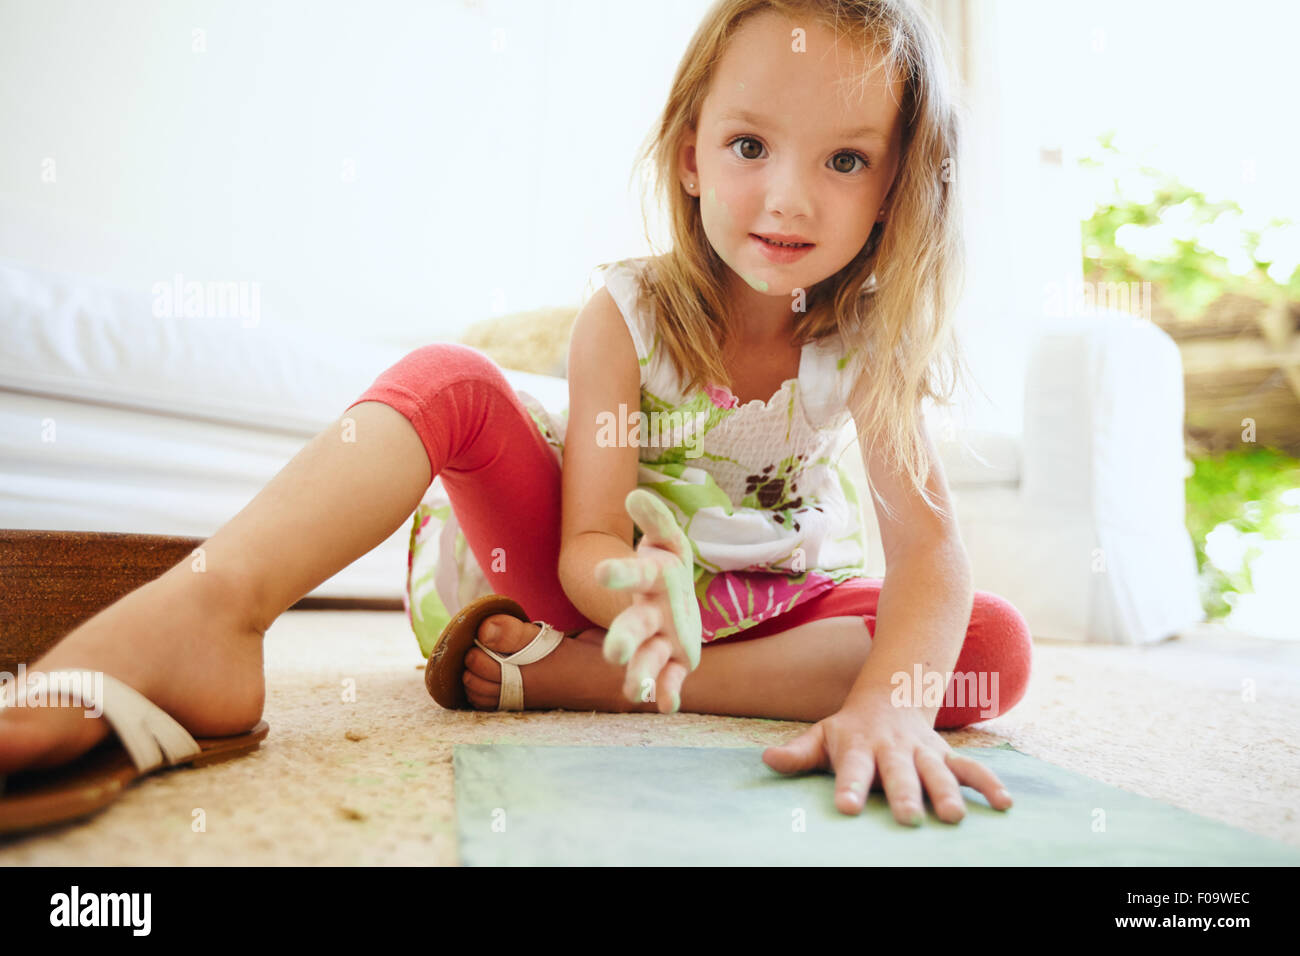 Porträt der schönen kleines Schulmädchen Färbung ein Bild. Mädchens Hand gemalt mit grüner Kreide Farbe Blick in die Kamera. Stockfoto